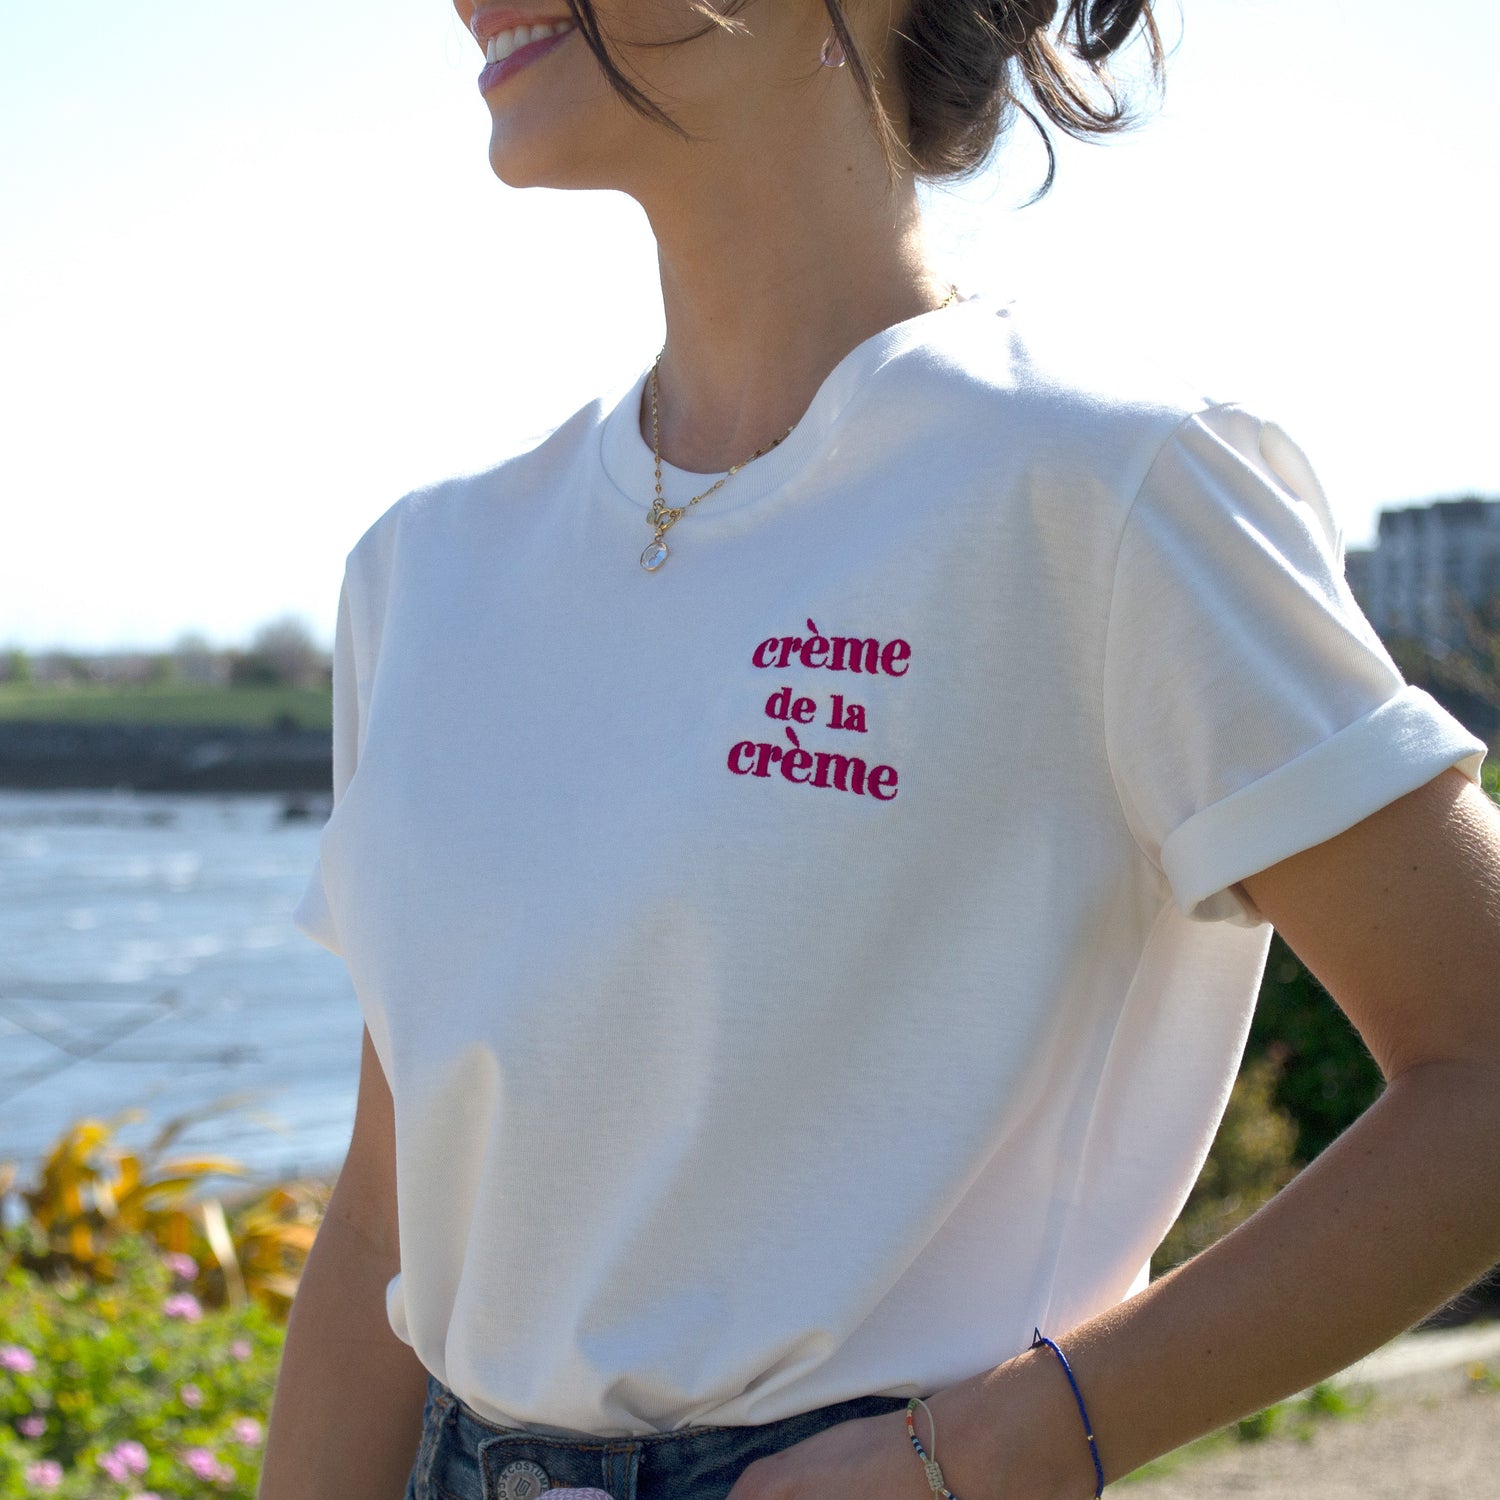 Crème de la crème embroidered T-shirt by